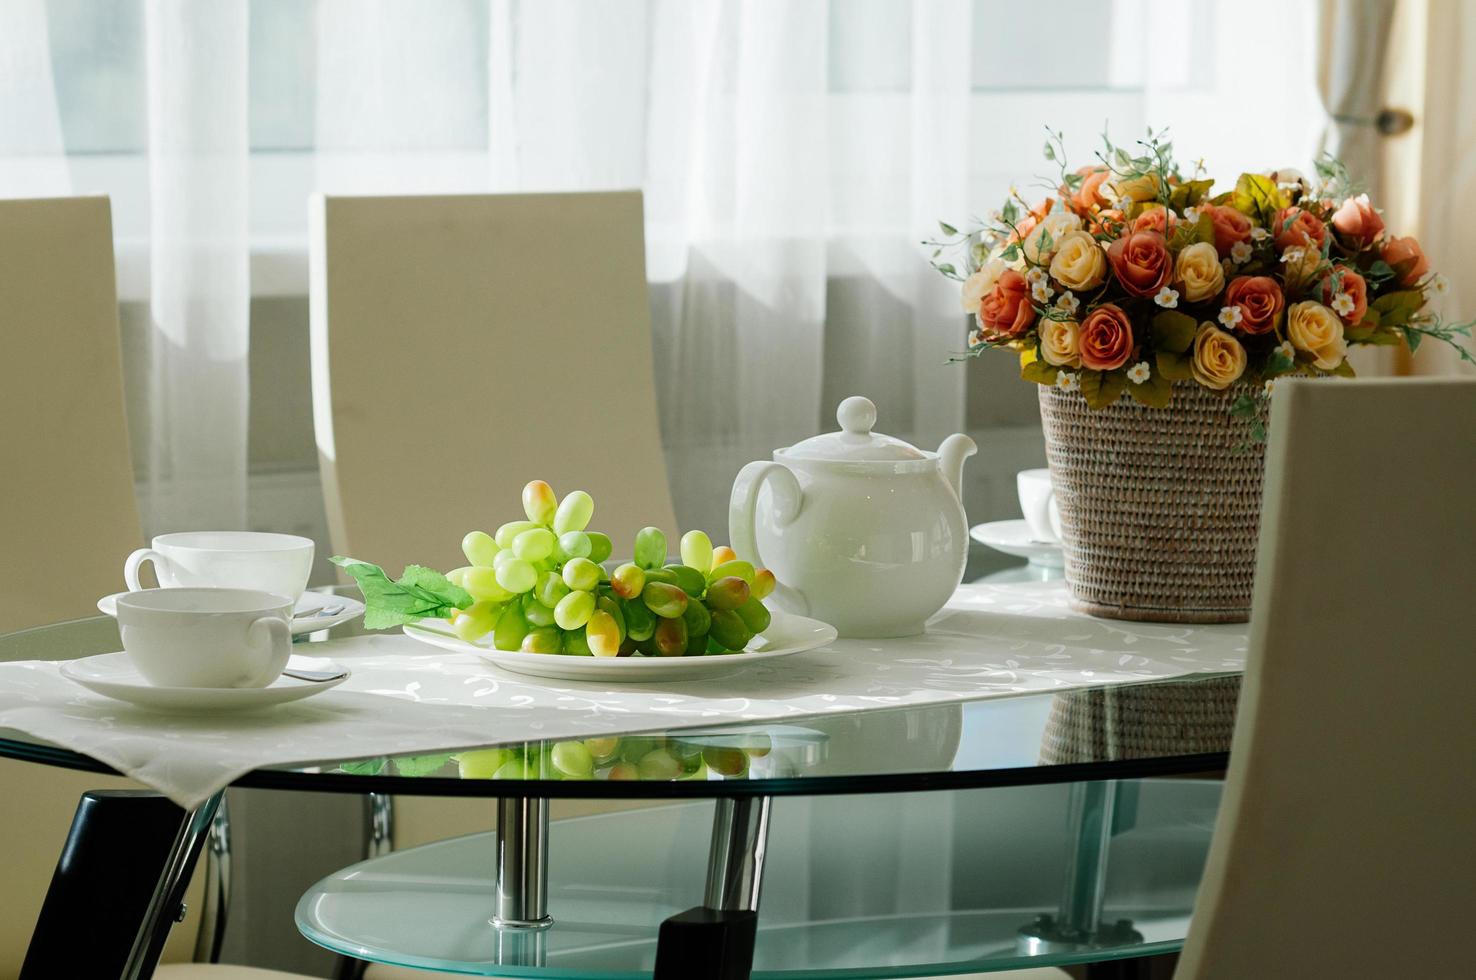 table à manger aménagée avec vaisselle pour thé, raisins, fleurs photo